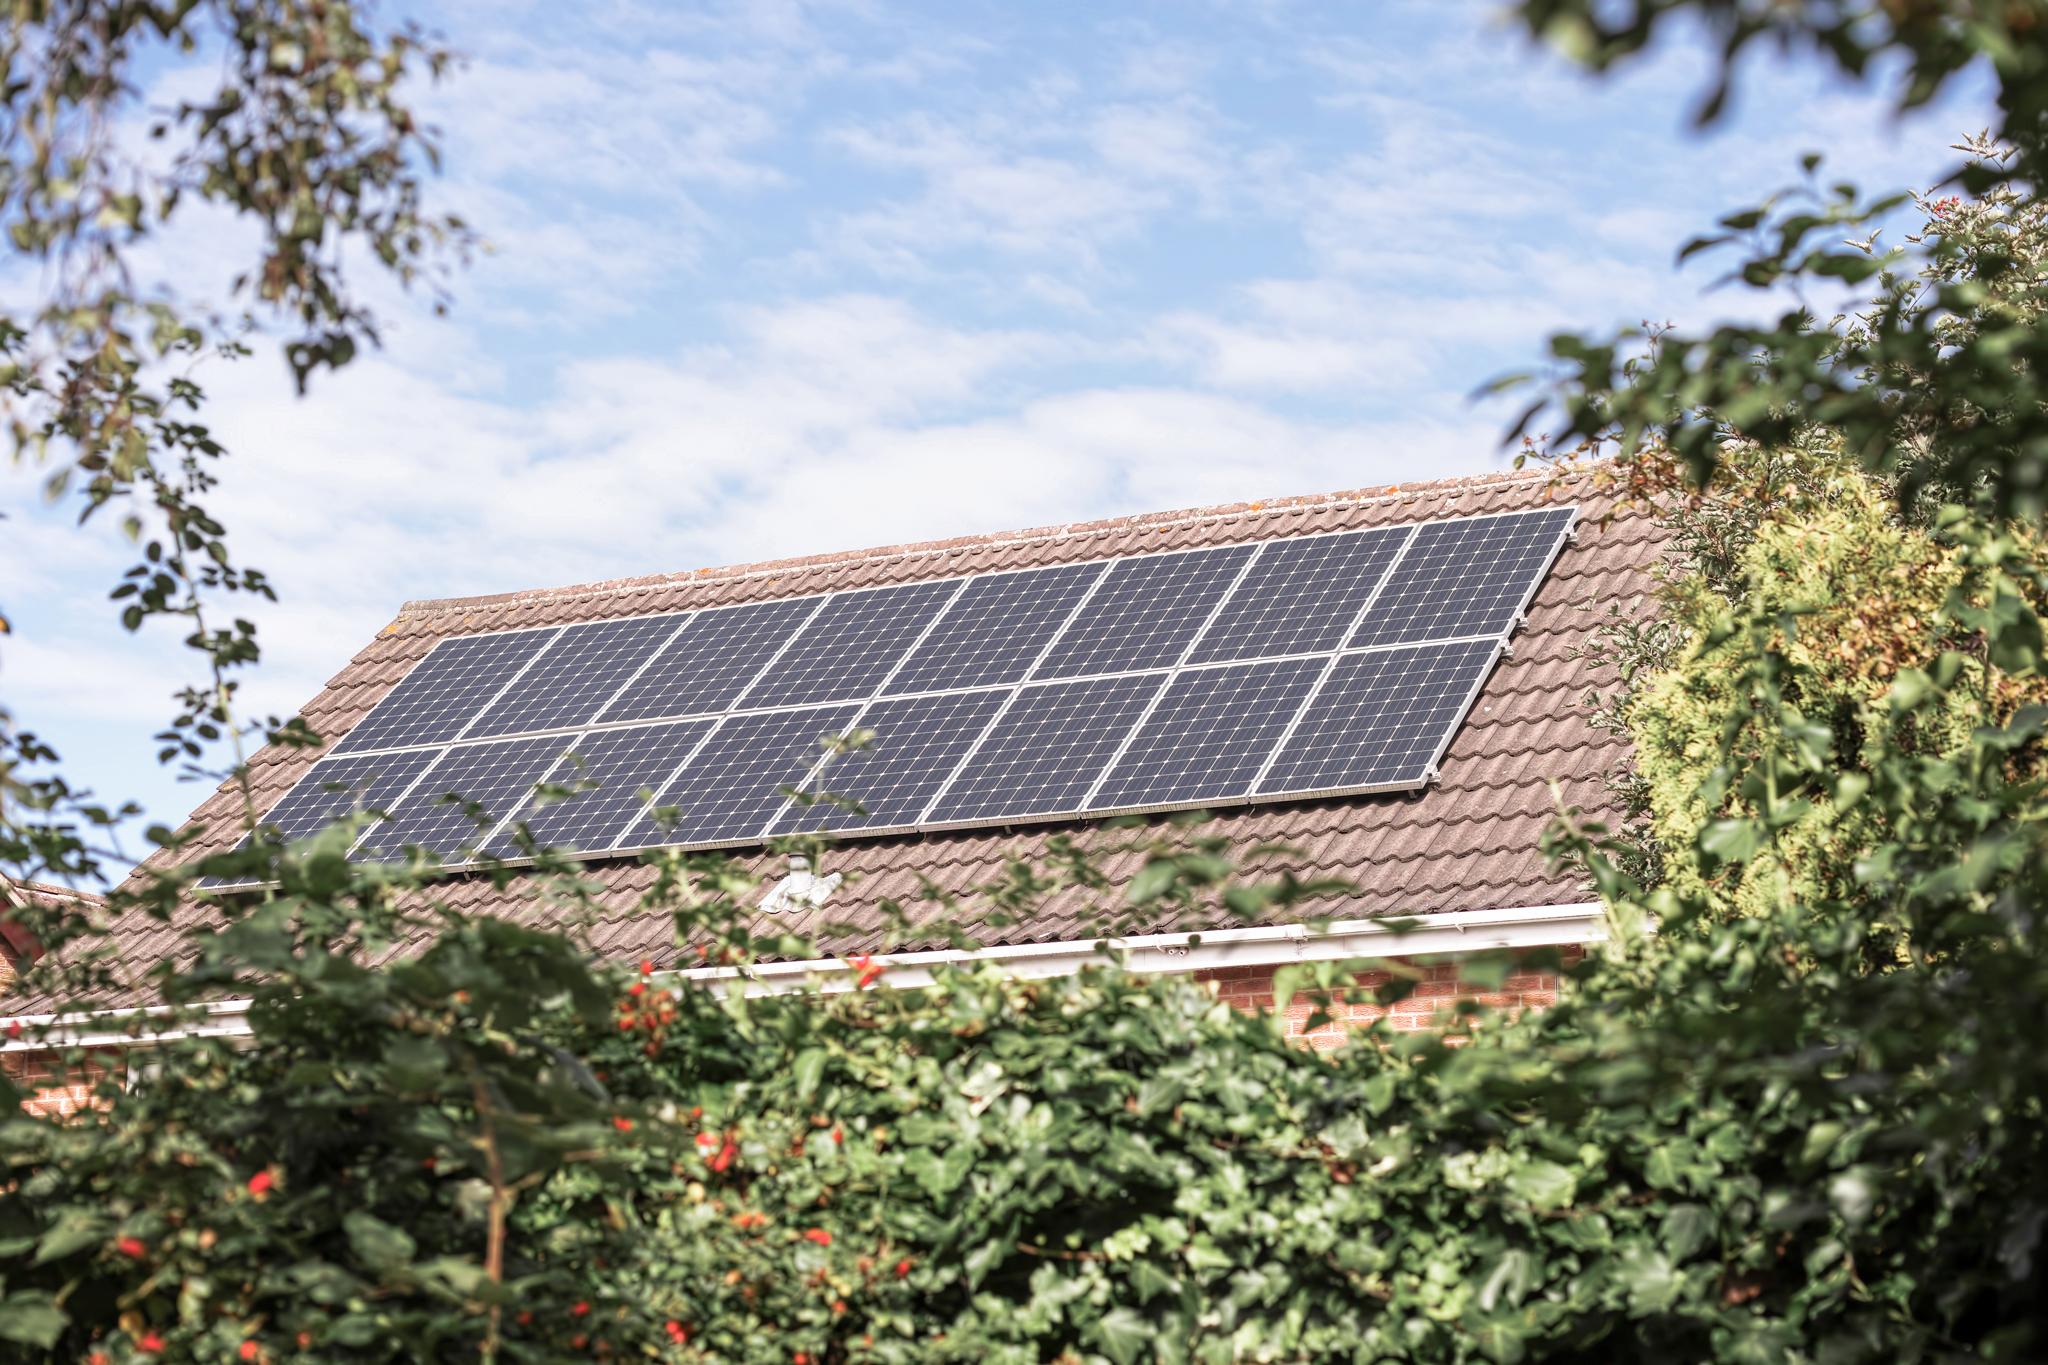 Dach eines Einfamilienhauses mit PV-Anlage – Beitrag einer Solaranlage in Zahlen